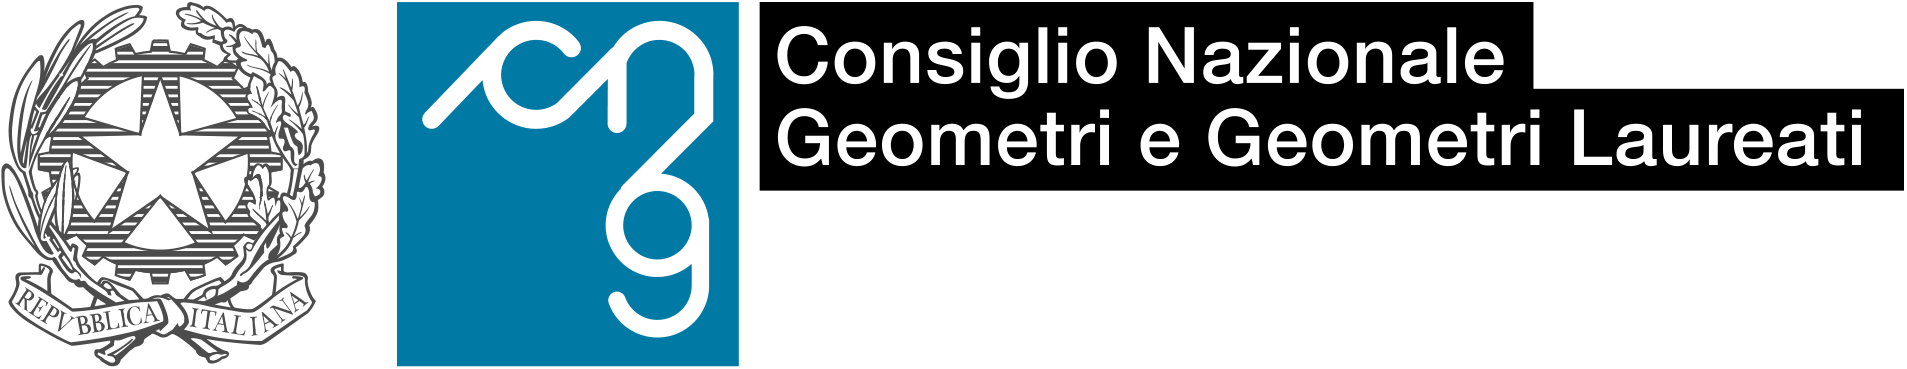 logo Consiglio Nazionale Geometri